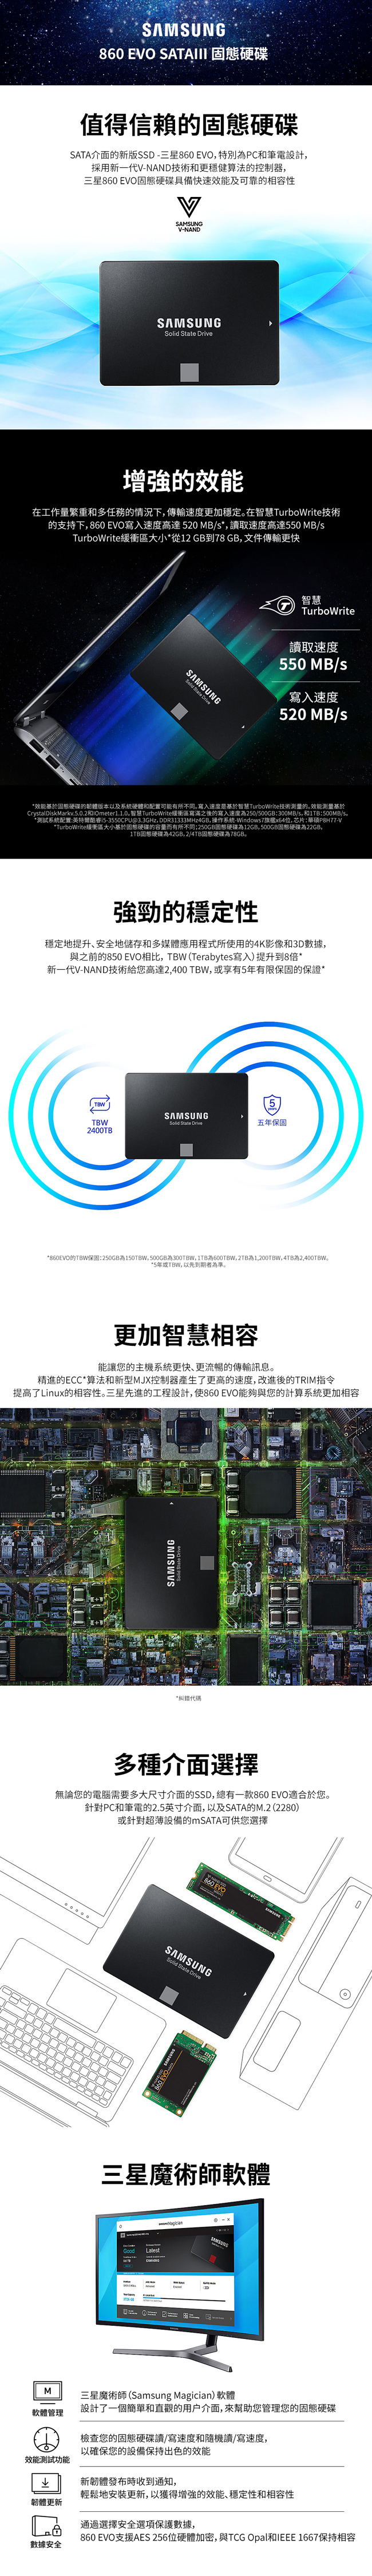 Samsung 860 EVO 250GB SSD固態硬碟